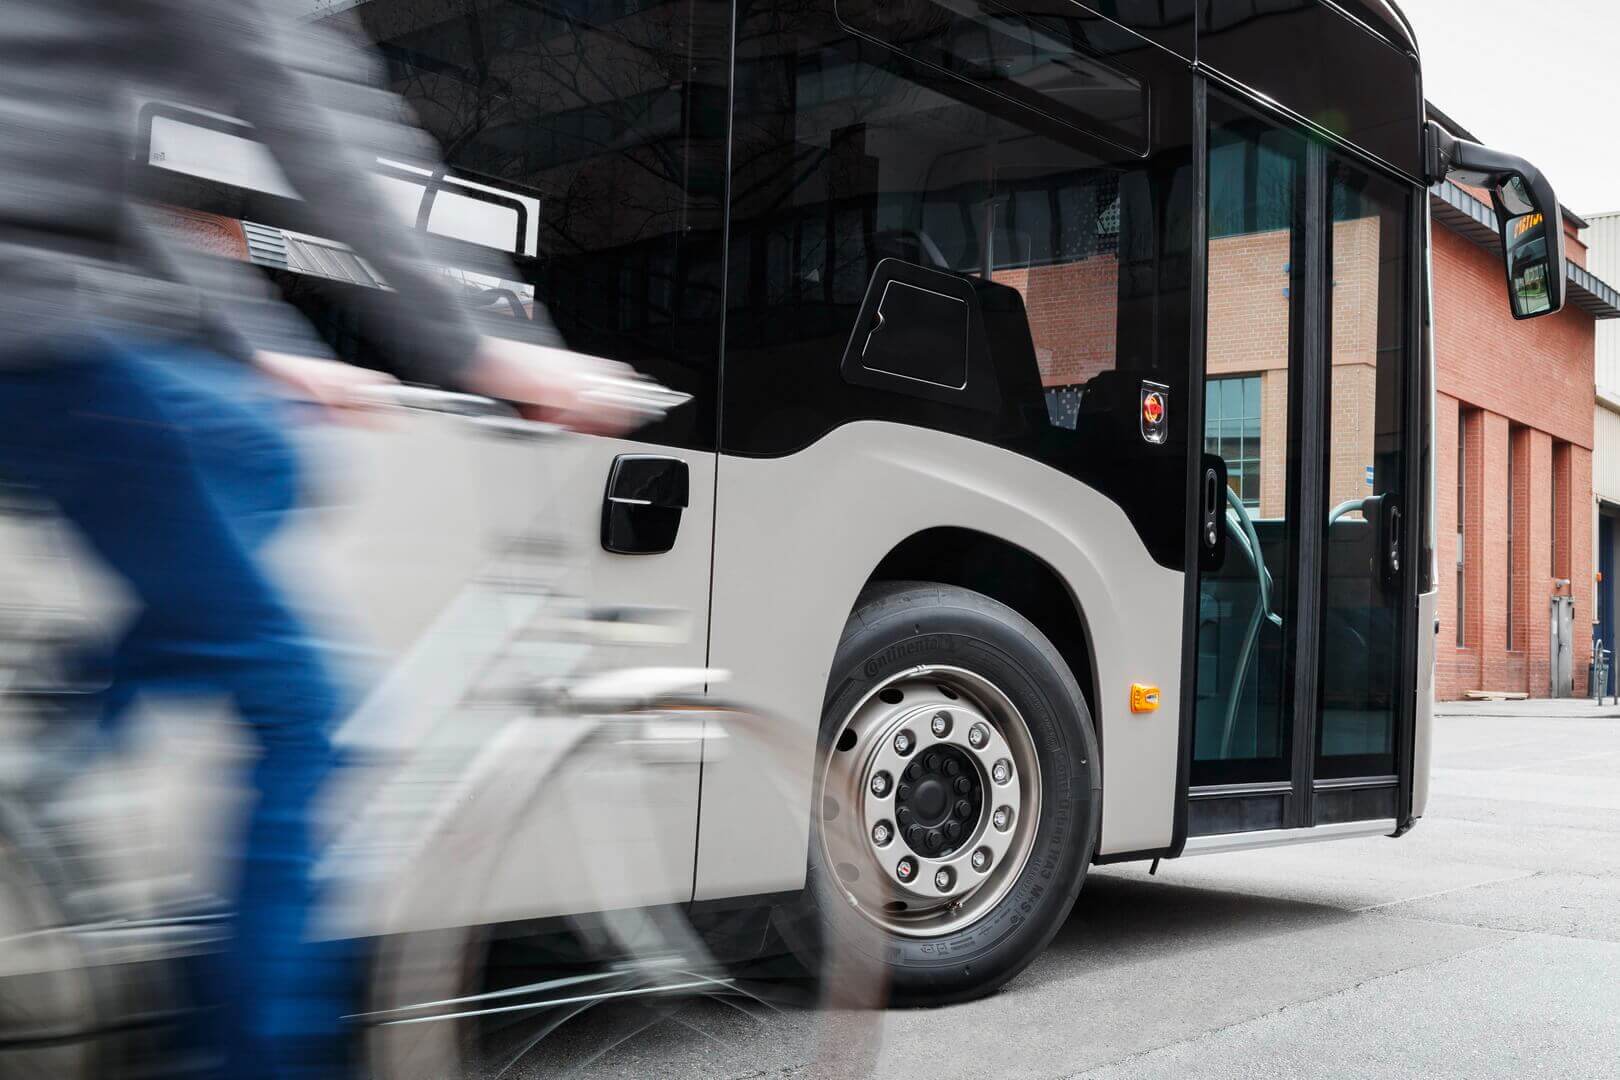 Daimler считает сочлененный автобус идеальным для использования в густонаселенных городах и мегаполисах с большим количеством пассажиров